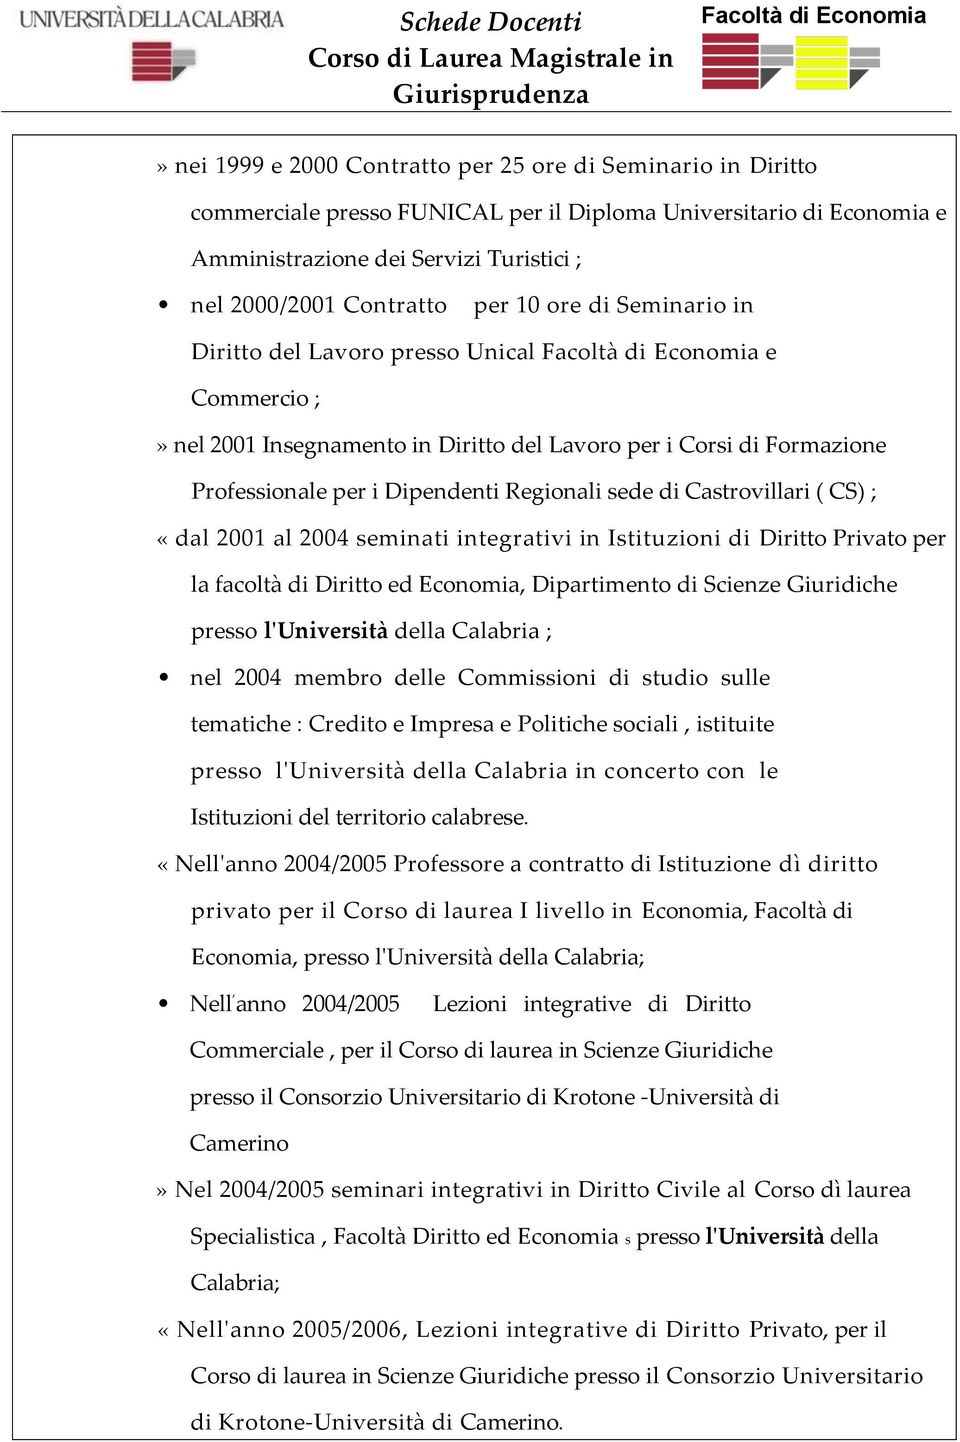 Castrovillari ( CS) ; «dal 2001 al 2004 seminati integrativi in Istituzioni di Diritto Privato per la facoltà di Diritto ed Economia, Dipartimento di Scienze Giuridiche presso l'università della